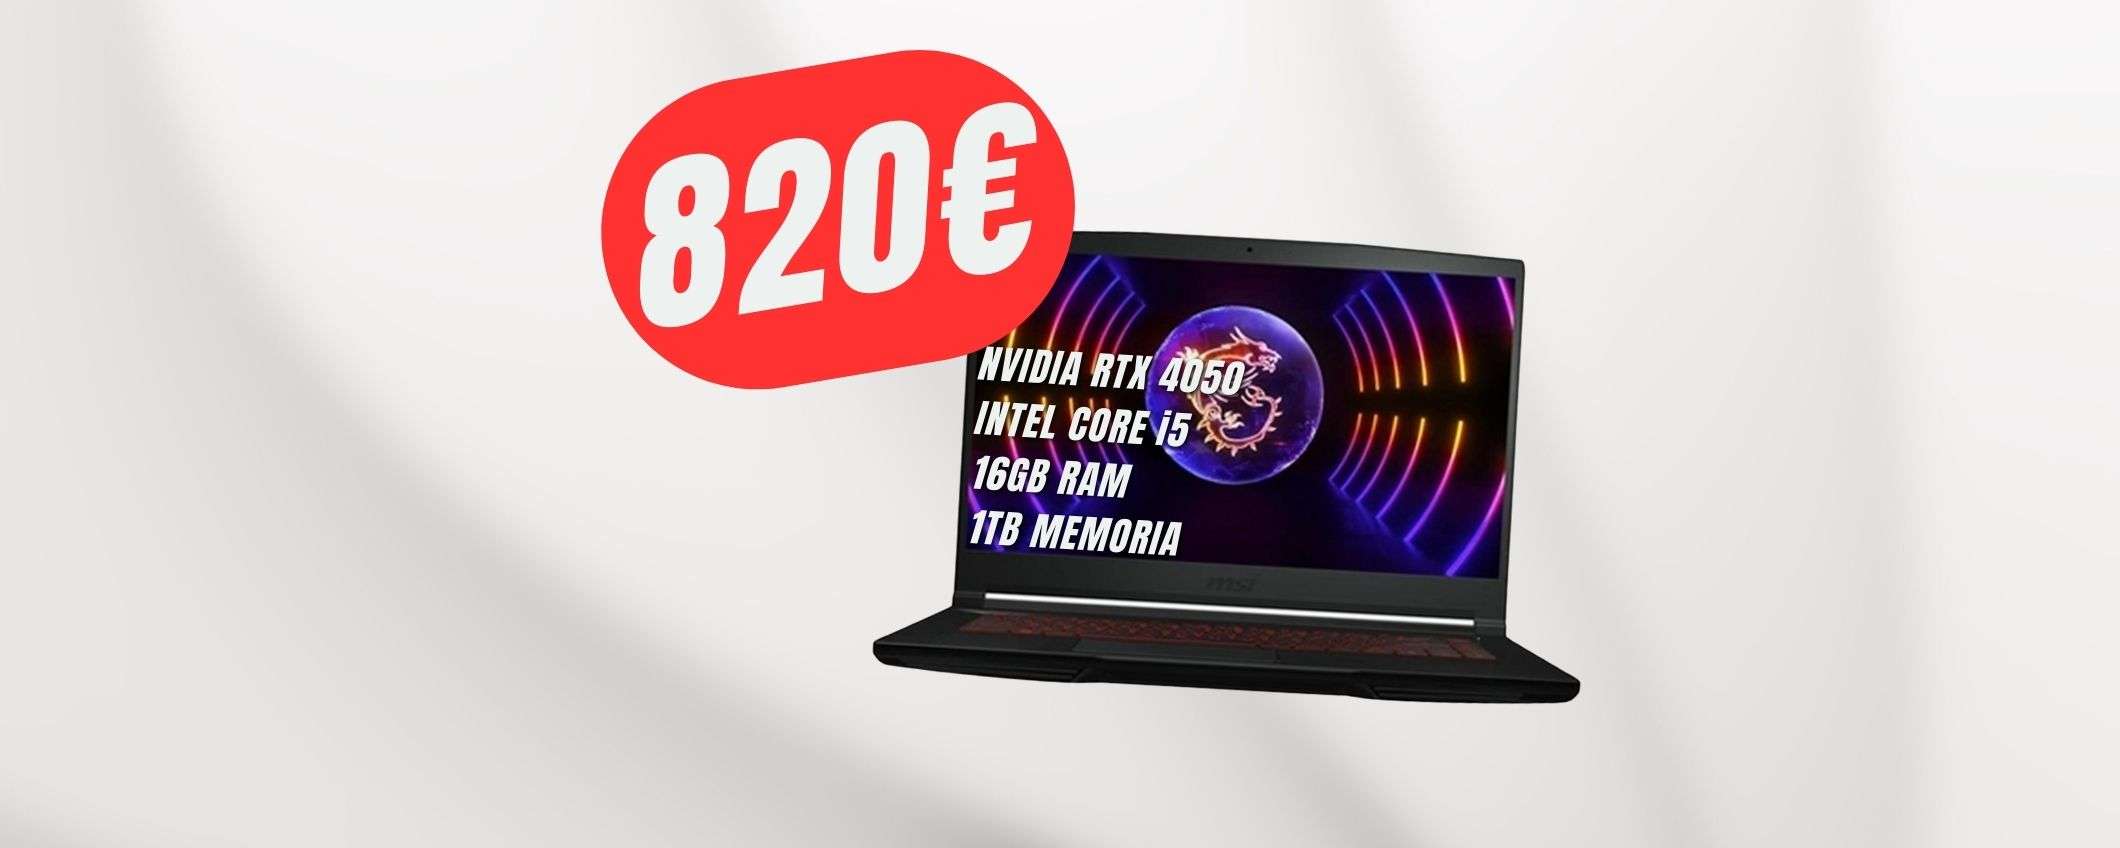 PREZZONE per questo portatile da gaming con NVIDIA RTX 4050: solo 820€!